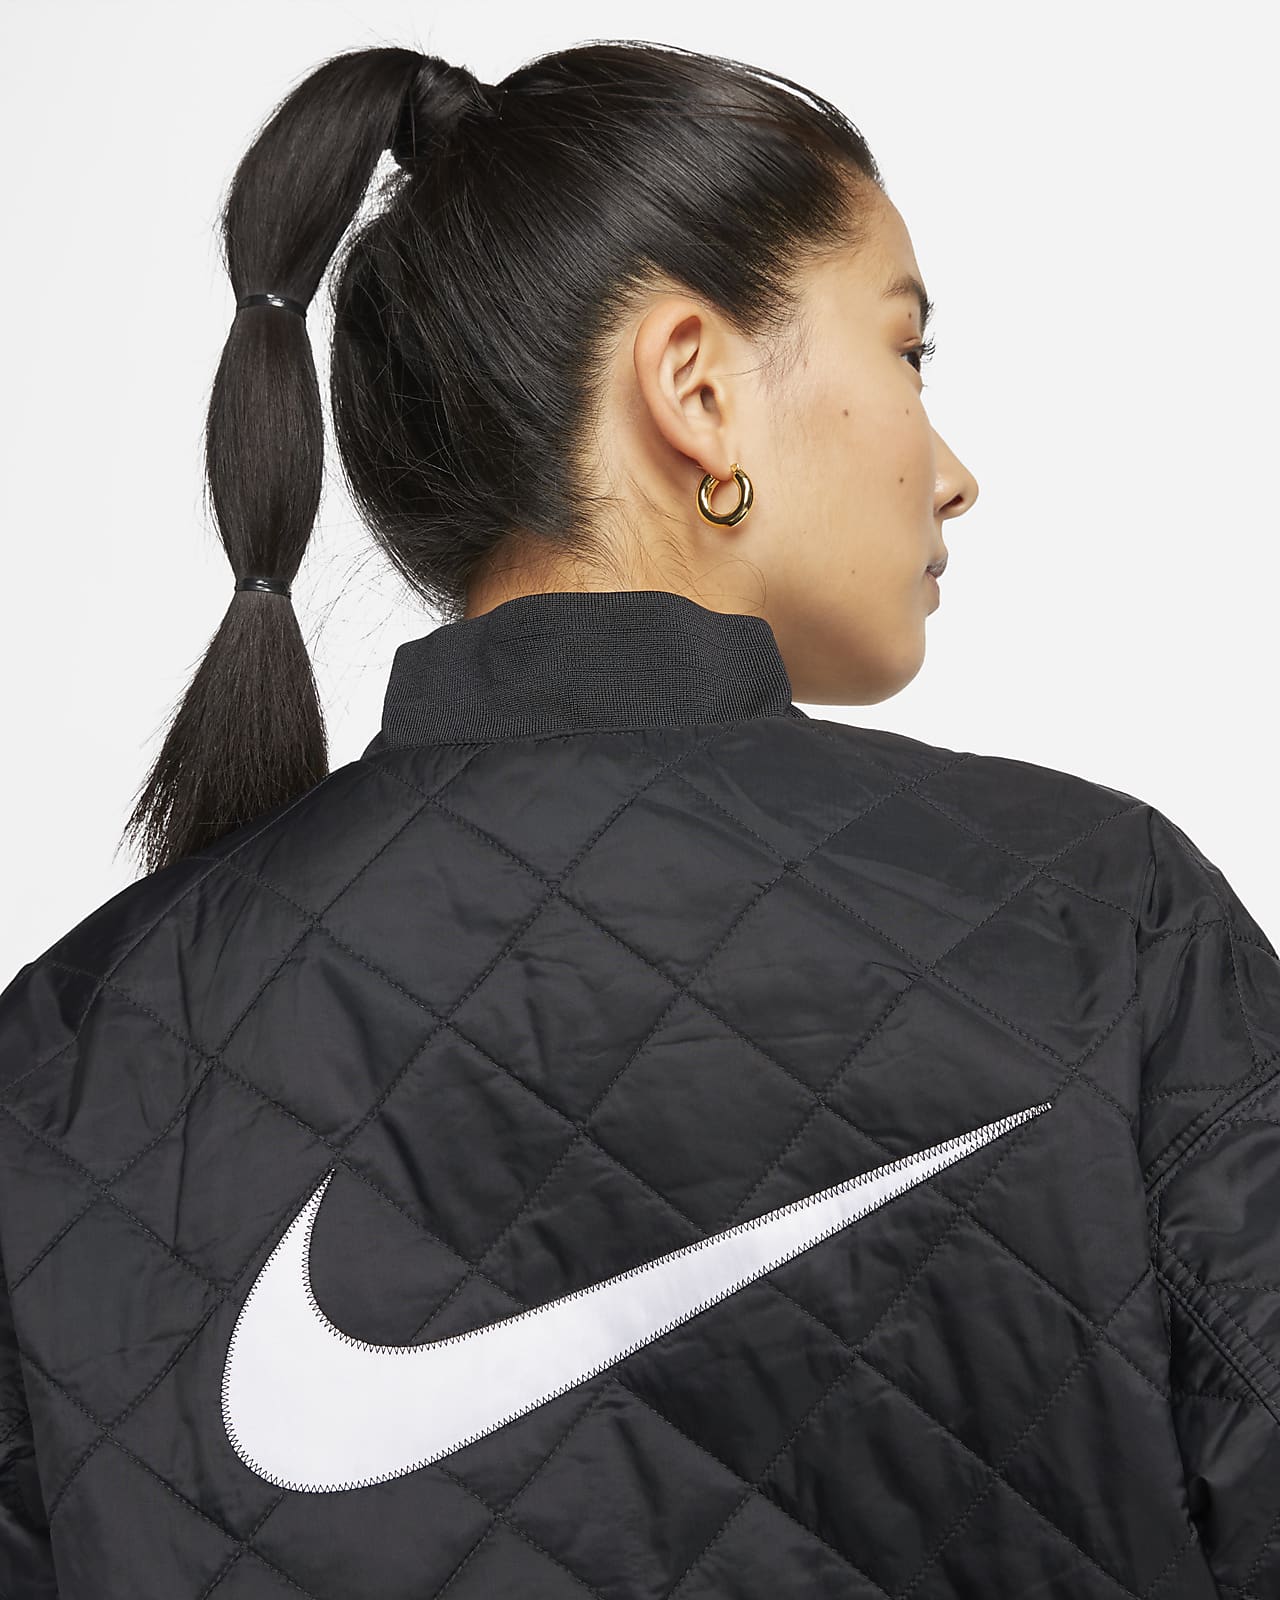 Raap zanger Wees tevreden Nike Sportswear Women's Varsity Bomber Jacket. Nike JP